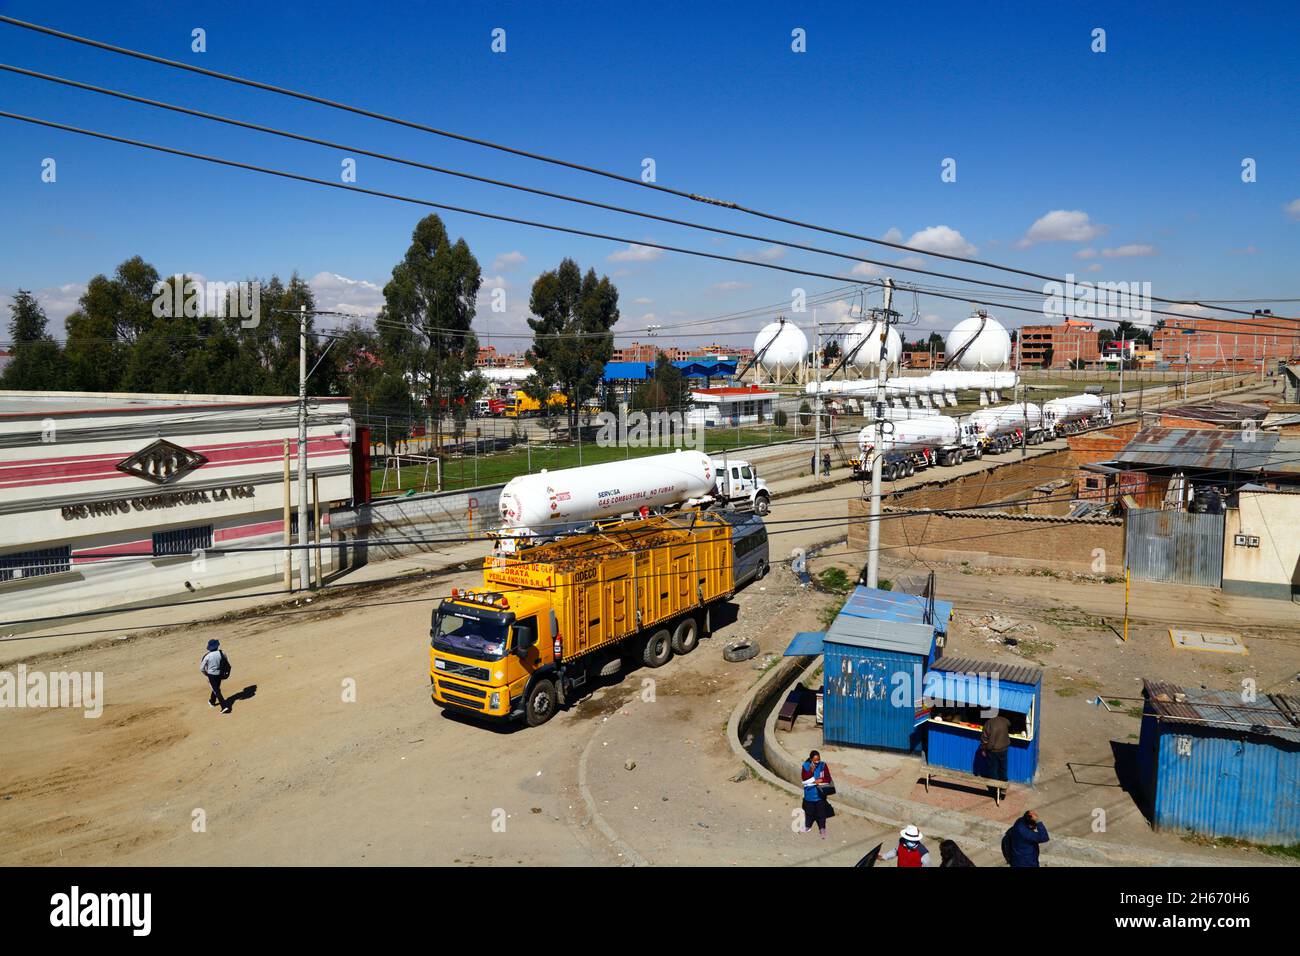 Senkata, El Alto, Bolivien. November 2021. Tankwagen für Flüssiggas und ein Lieferwagen für Inlandsflaschen (gelb) vor der Senkata-Brennstofffabrik auf der Av 6 de Marzo / Camino Oruro in El Alto. Yacimientos Petrolíferos Fiscales Bolivianos (YPFB, Boliviens staatliches Öl- und Gasunternehmen) verfügt hier über eine große Raffinerie- und Speicheranlage, Die La Paz, El Alto und die Umgebung mit Benzin, Diesel und flüssigem Erdgas (in Flaschen für den Hausgebrauch, aber auch für Fahrzeuge und andere Industrien) versorgt. Im Hintergrund sind einige der sphärischen Gasspeichertanks zu sehen. Stockfoto